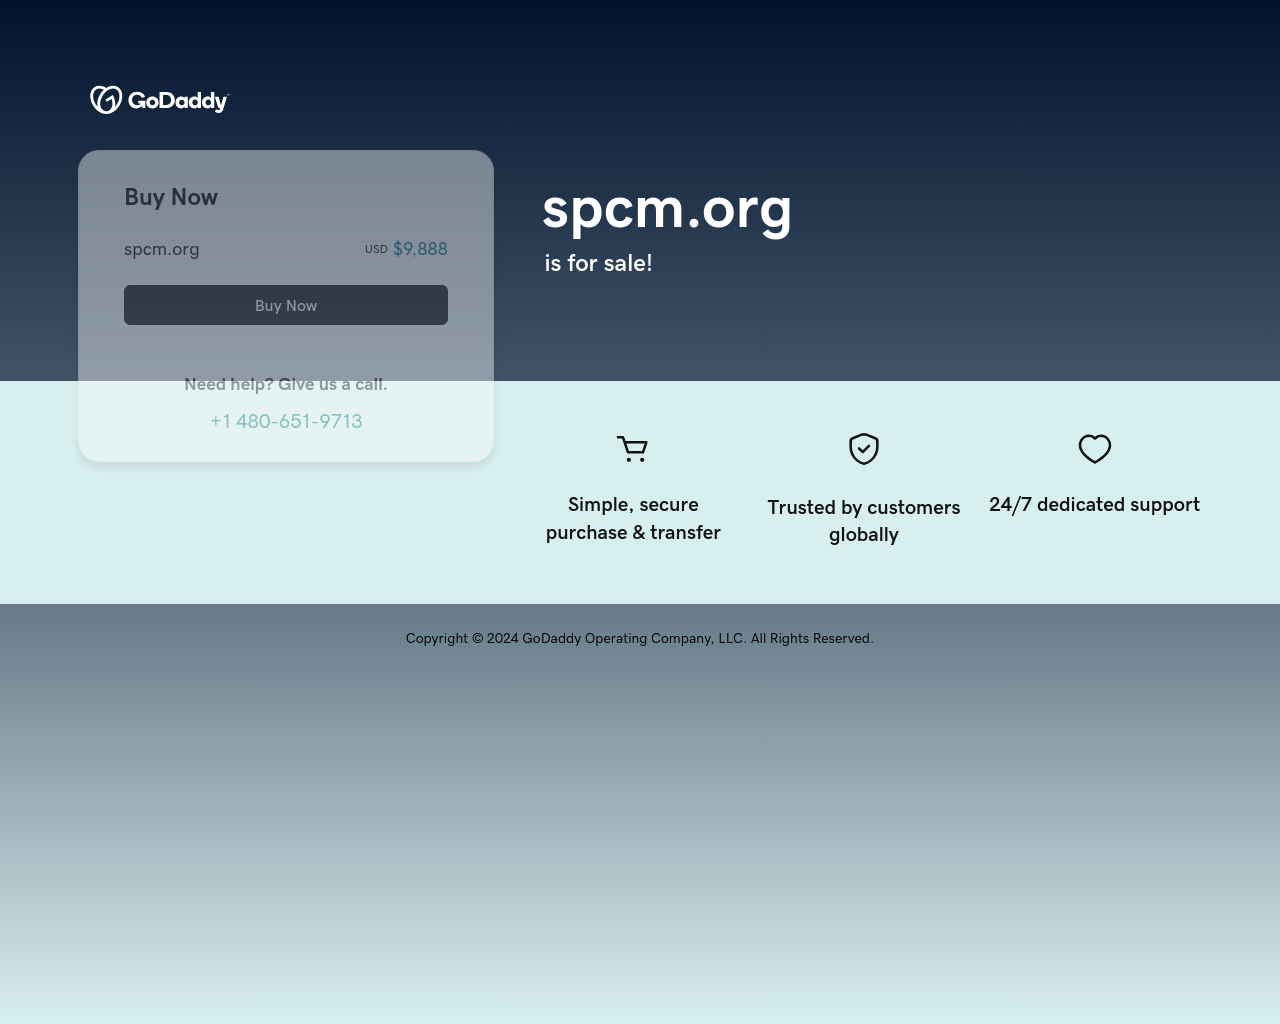 spcm.org